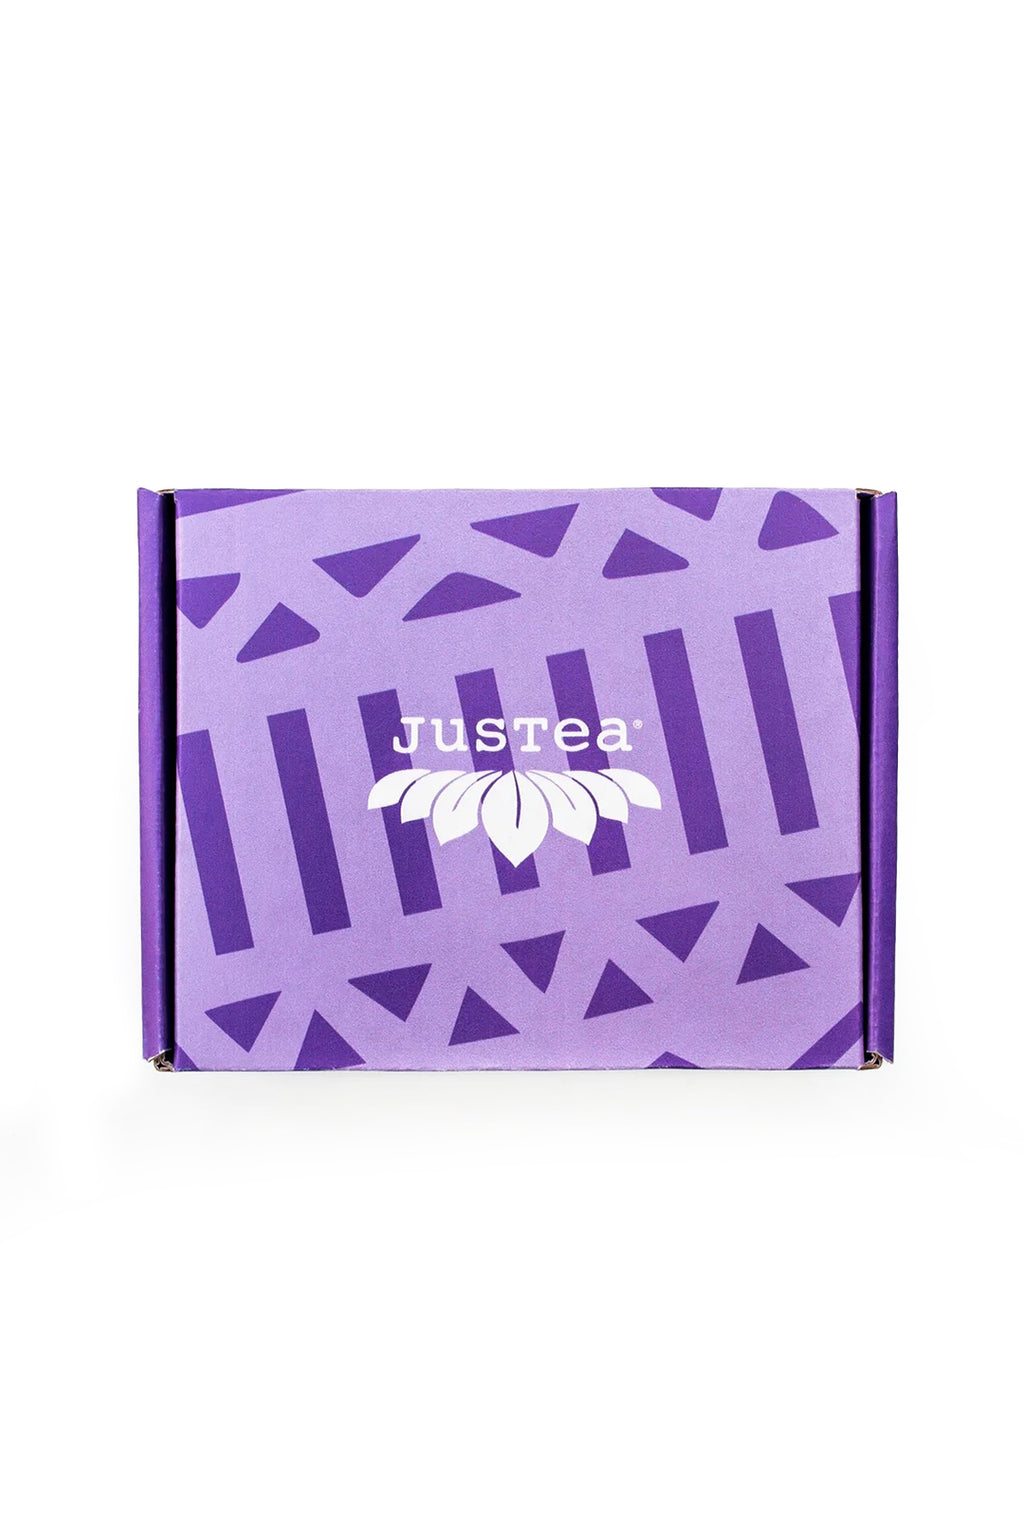 JusTea Loose Leaf Purple Tea Trio Gift Box